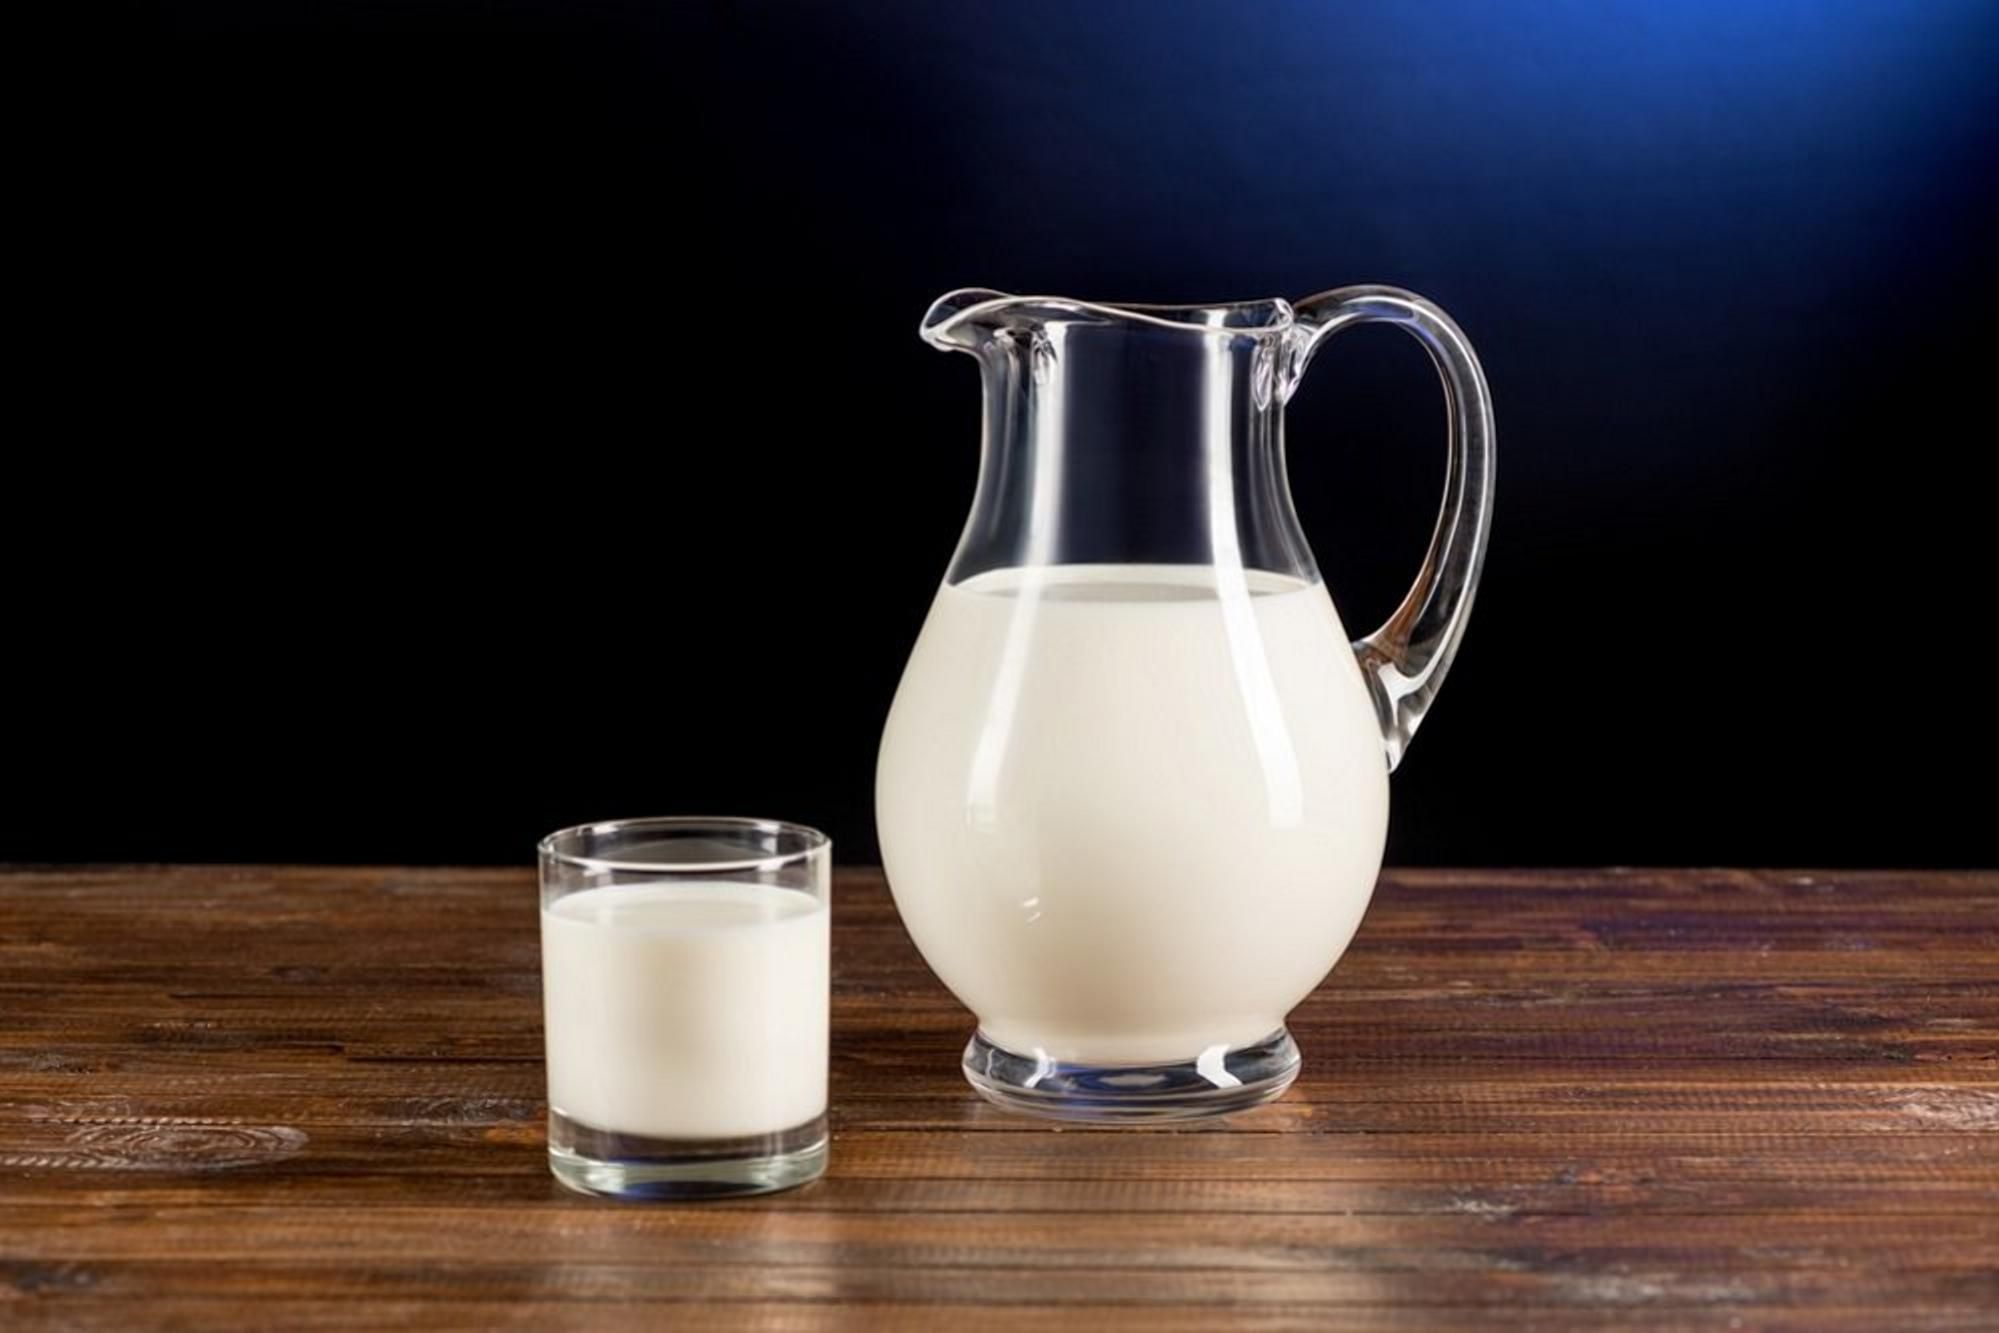 Цена молока: стоит ли ожидать понижения - Агро